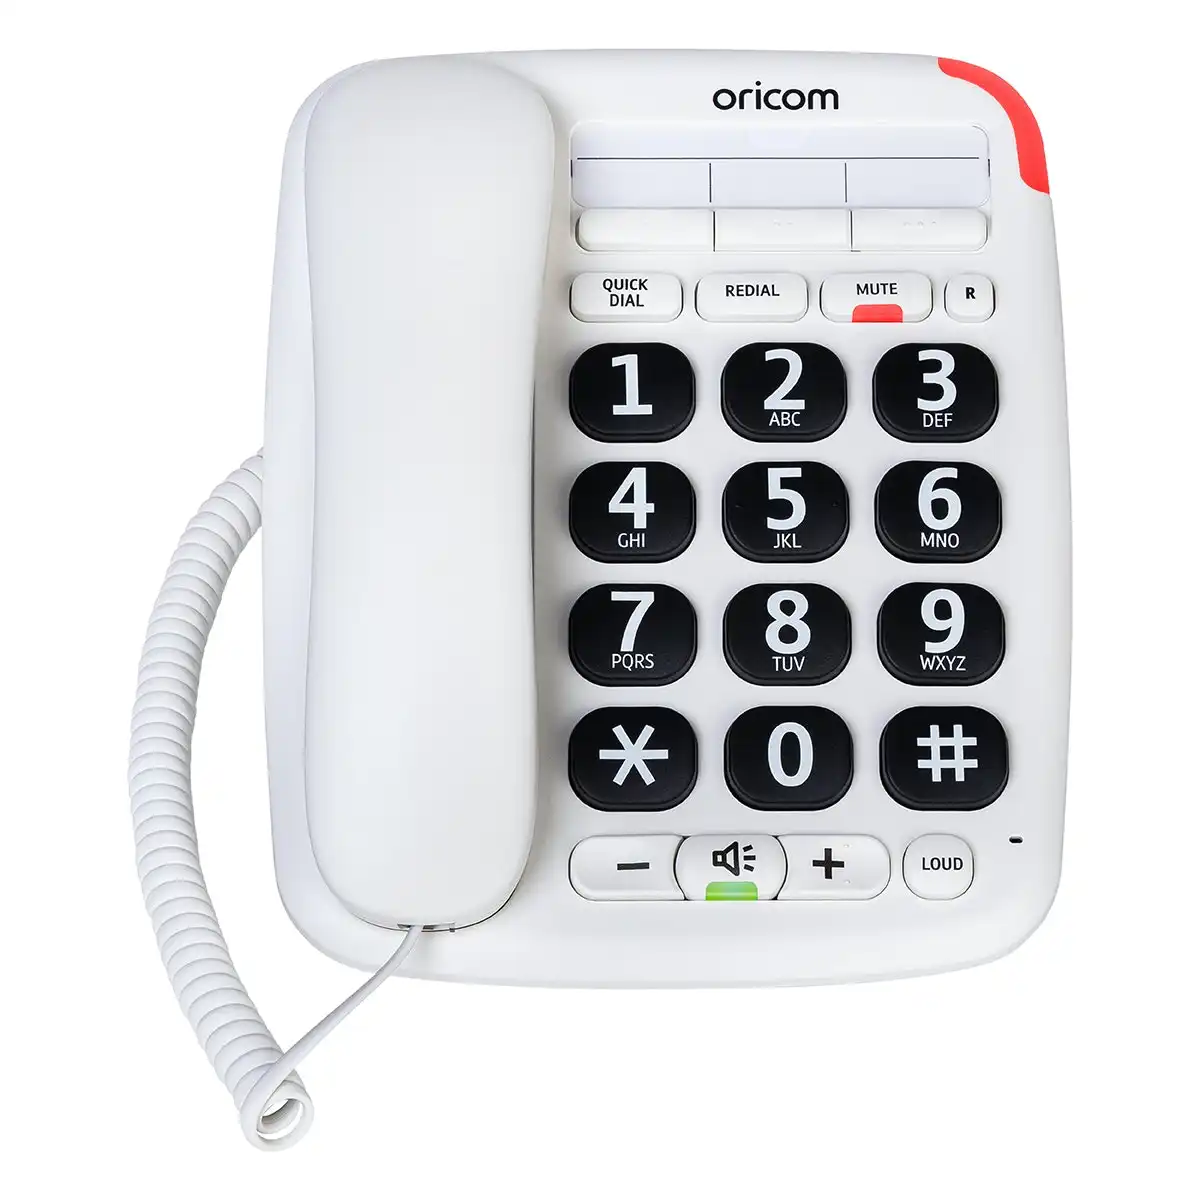 Oricom CARE95 Big Button Amplified Speaker Phone